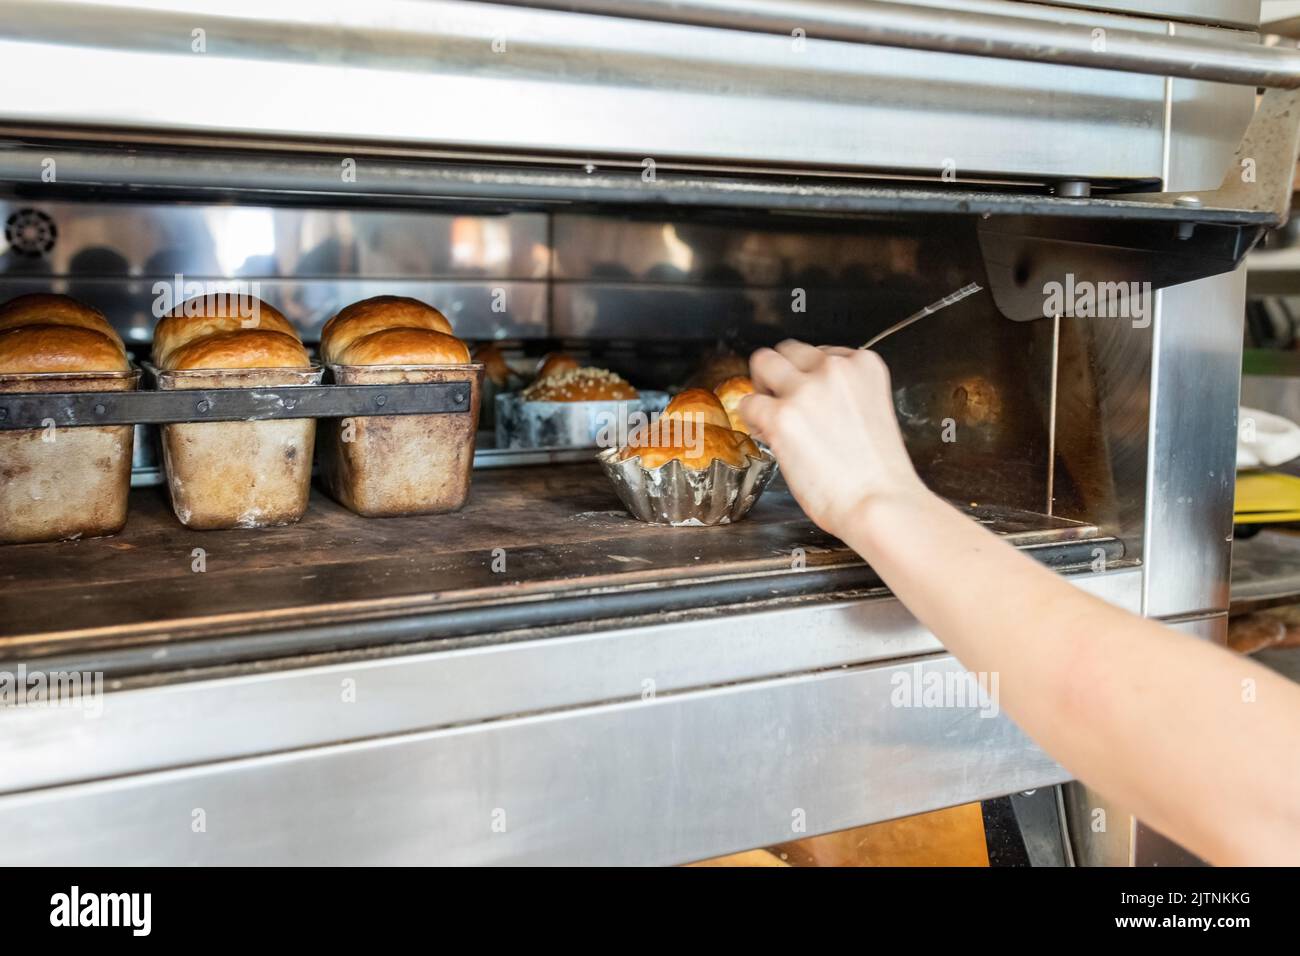 Der Bäcker misst die Temperatur innerhalb der Brioche, um die Bereitschaft des Brotes zu bestimmen. Vorderansicht. Stockfoto